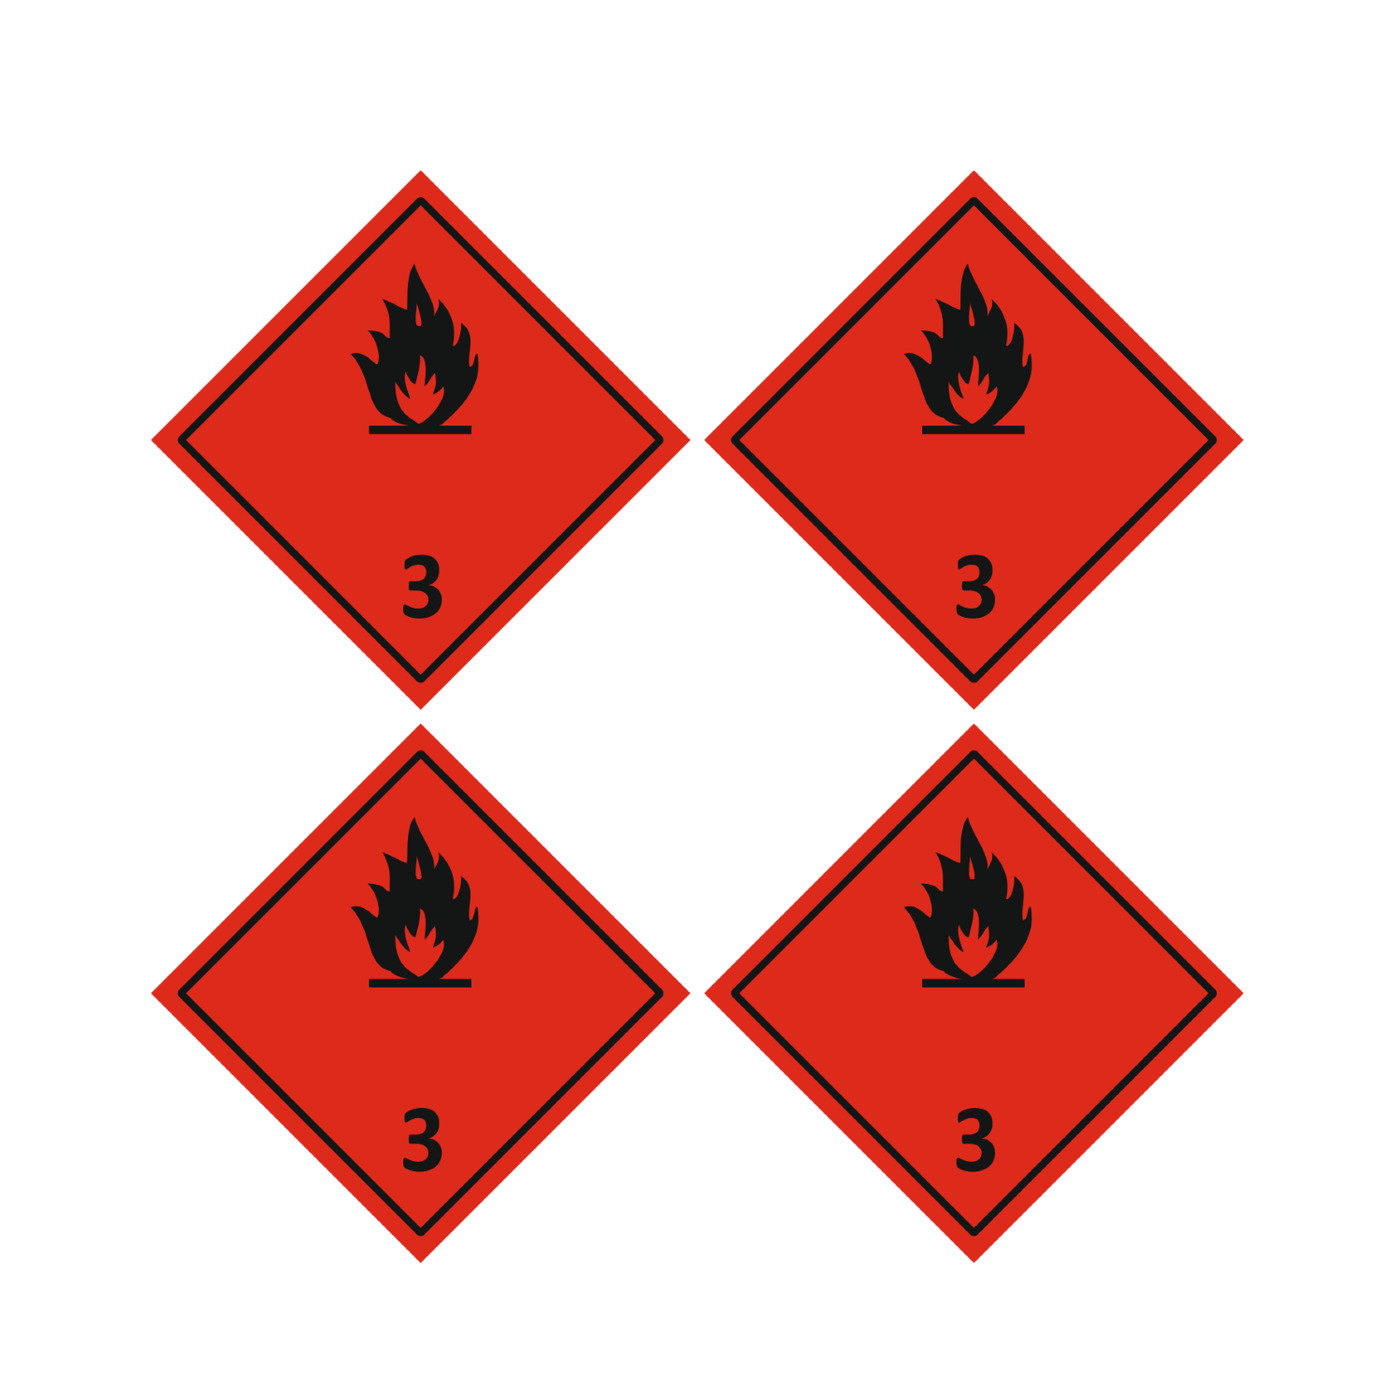 Знаки классов опасных грузов. Легковоспламеняющиеся жидкости 3 класс опасности. Класс 3- легковоспламеняющиеся жидкости ( ЛВЖ);. Знак опасности легковоспламеняющаяся жидкость 3.3. 3 Класс опасных грузов ЛВЖ.